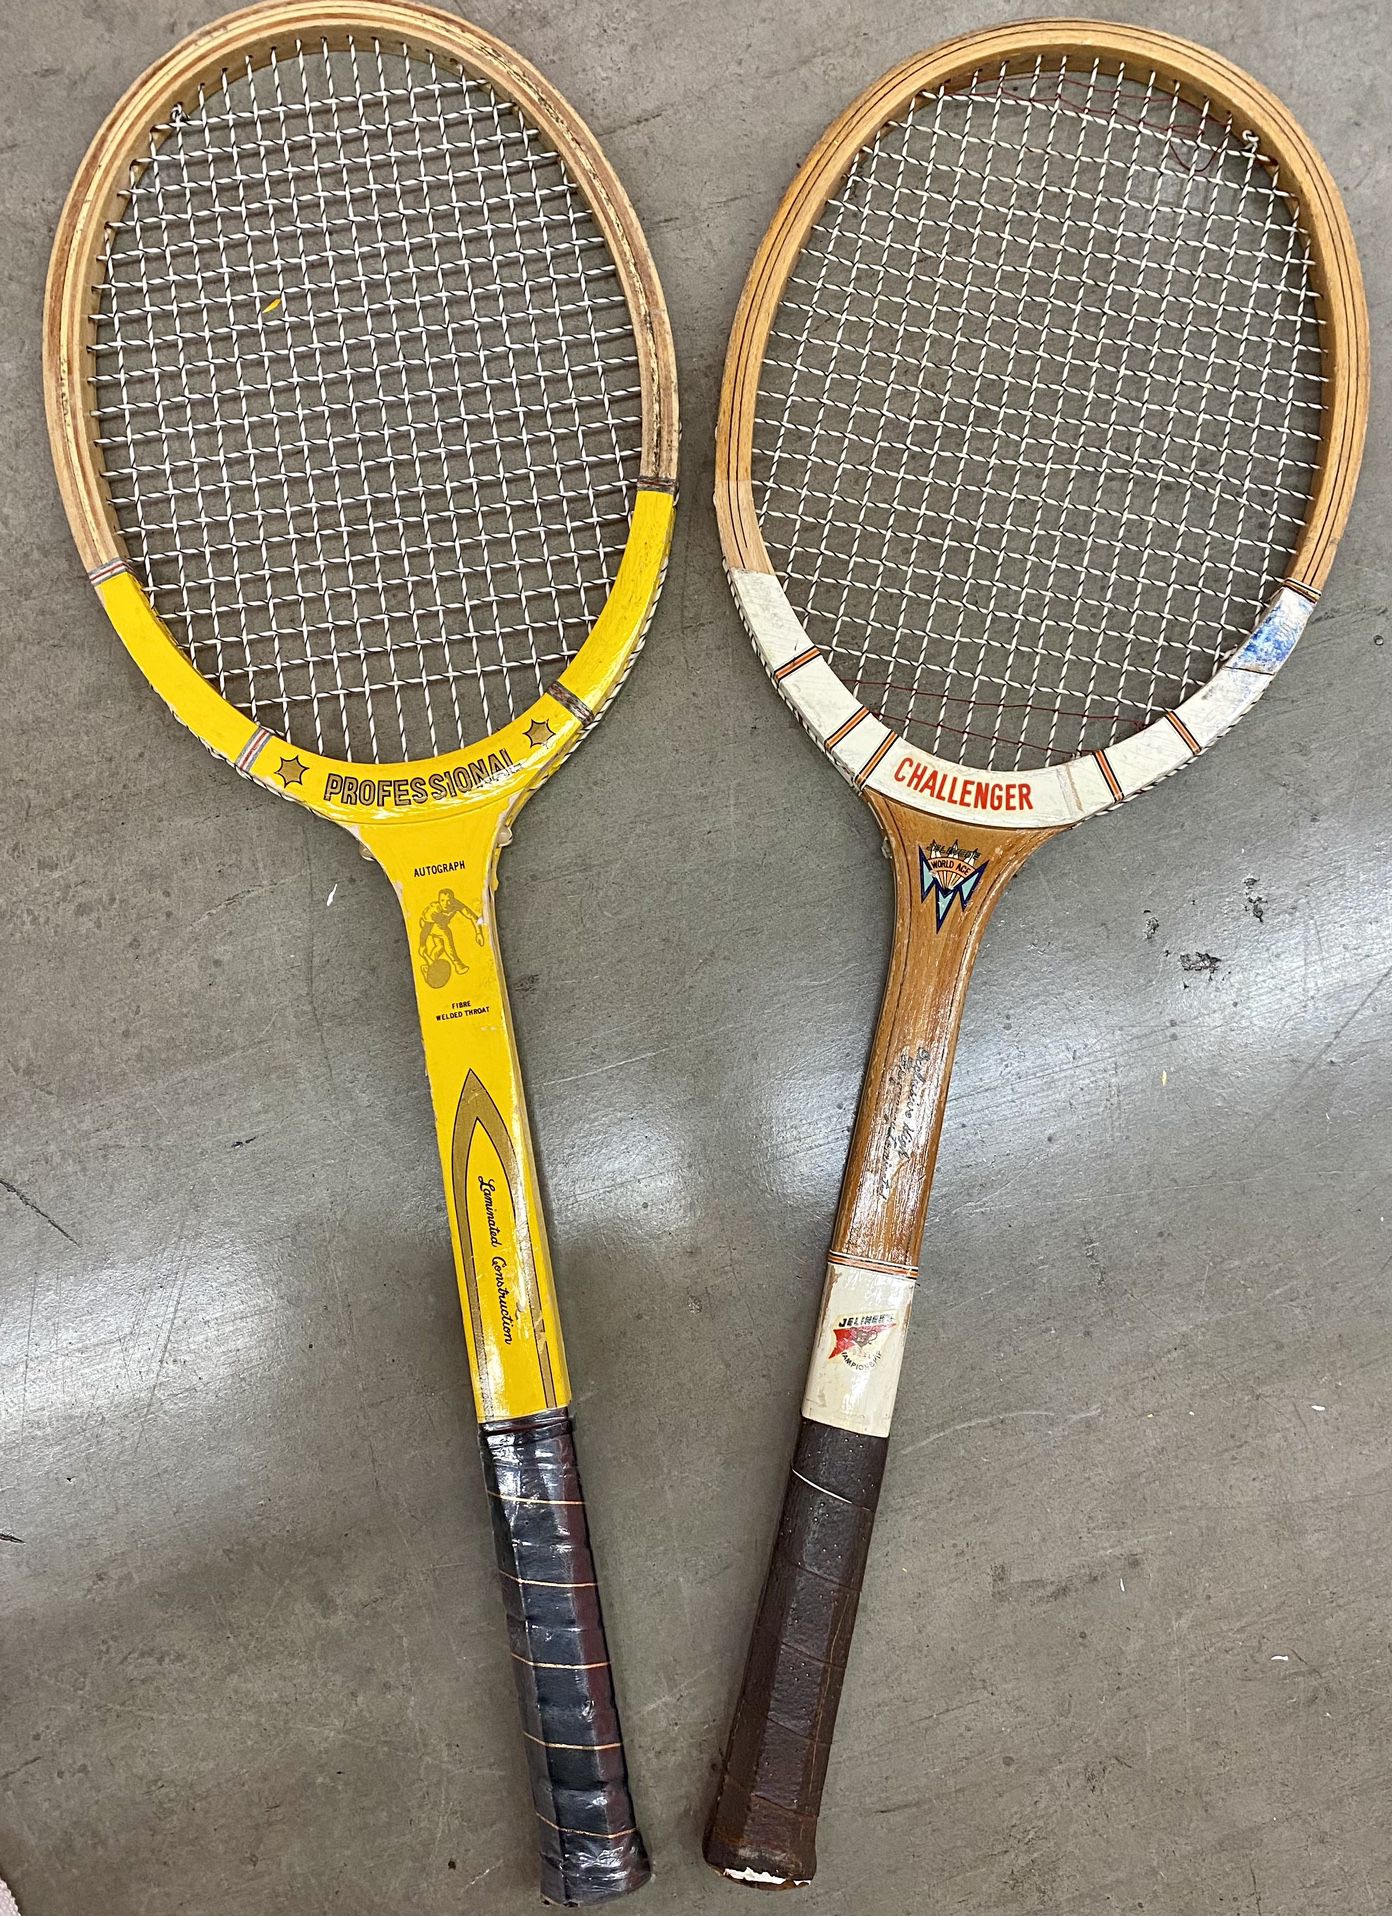 2 Tennis Rackets